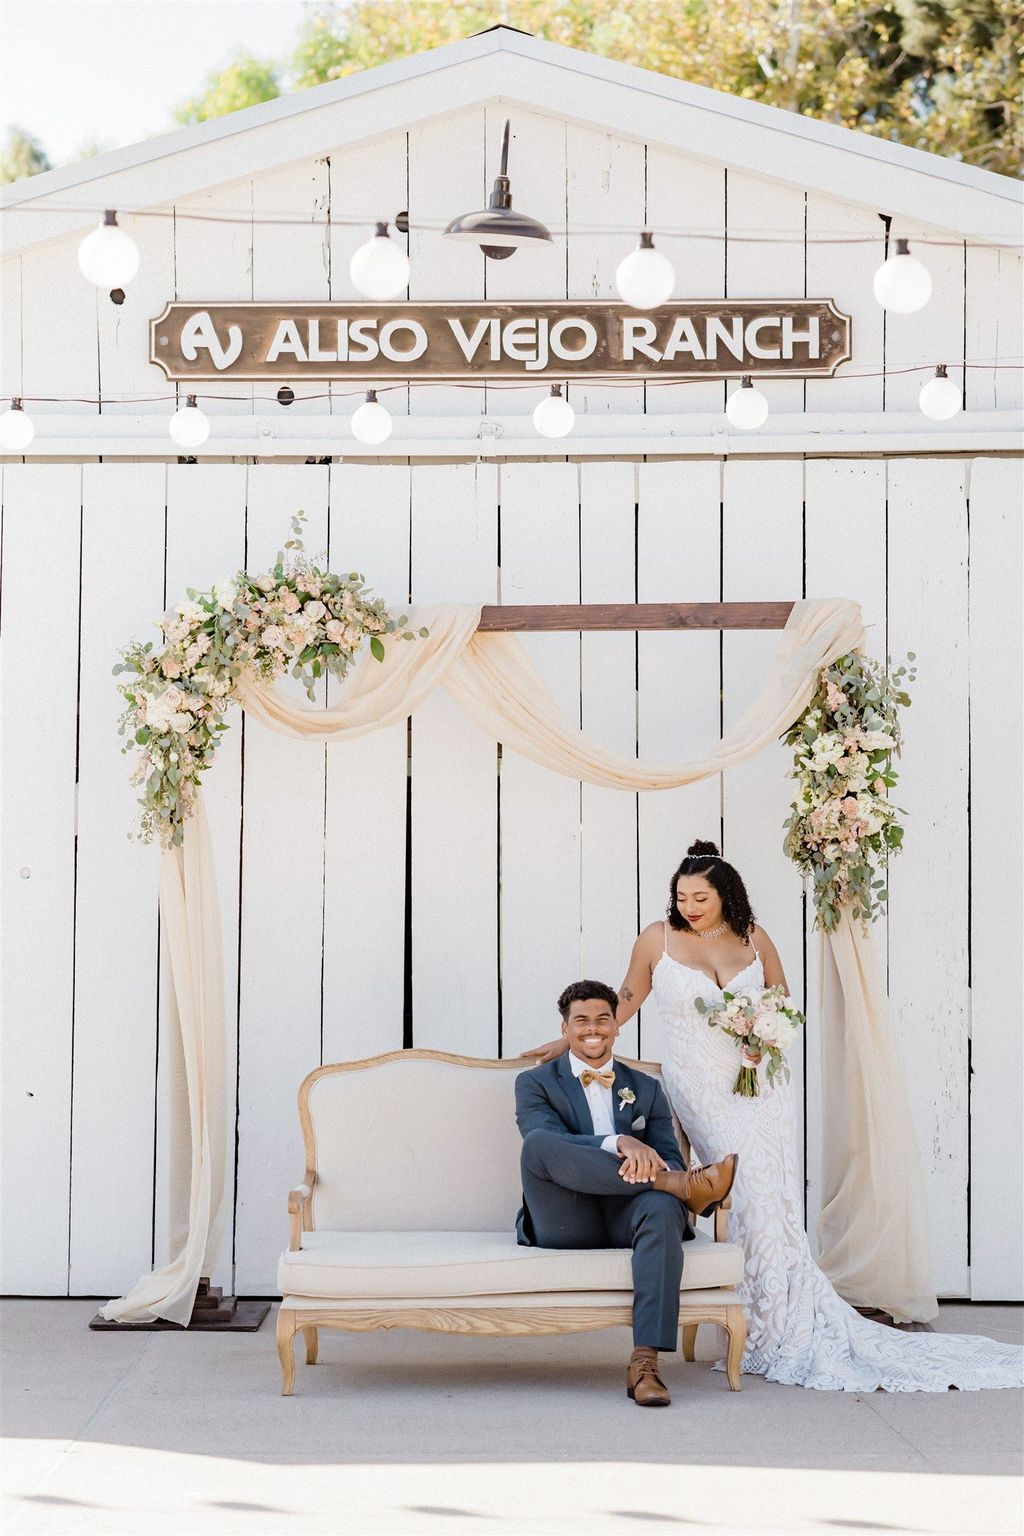 Aliso Viejo Ranch